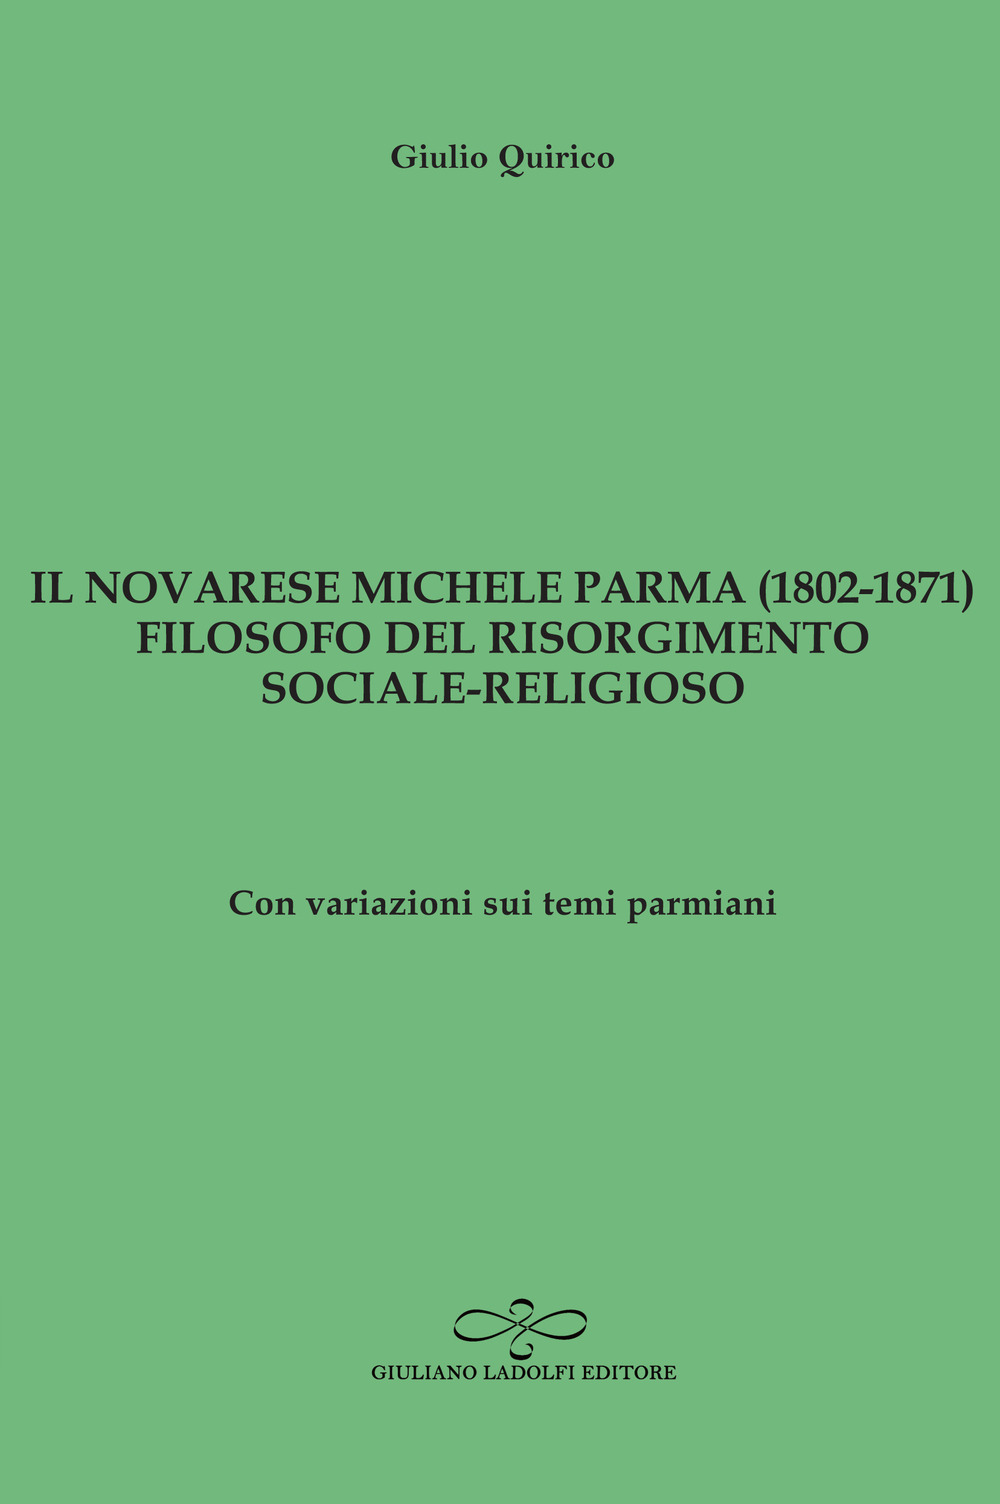 Il novarese Michele Parma (1802-1827), filosofo del Risorgimento sociale-religioso. Con variazioni sui temi parmiani